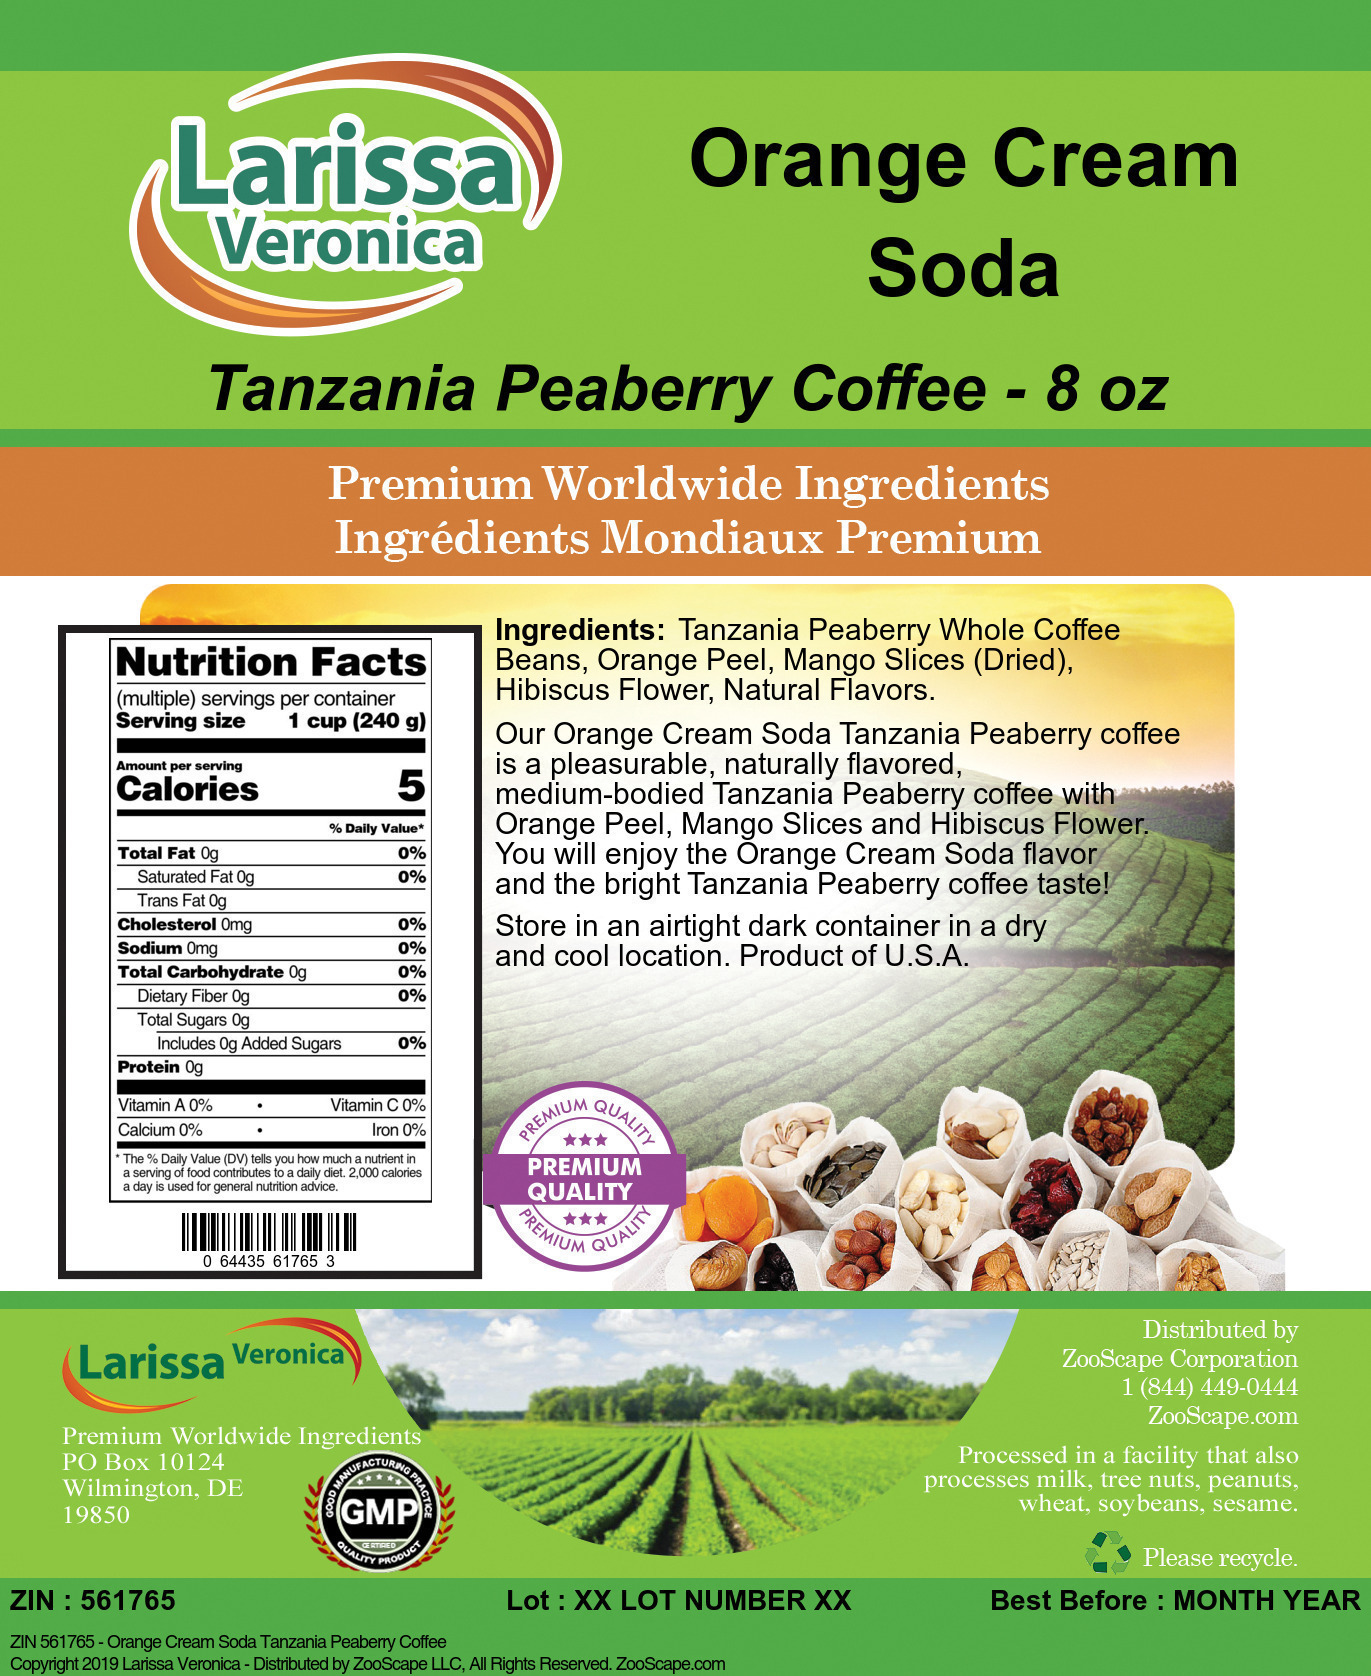 Orange Cream Soda Tanzania Peaberry Coffee - Label